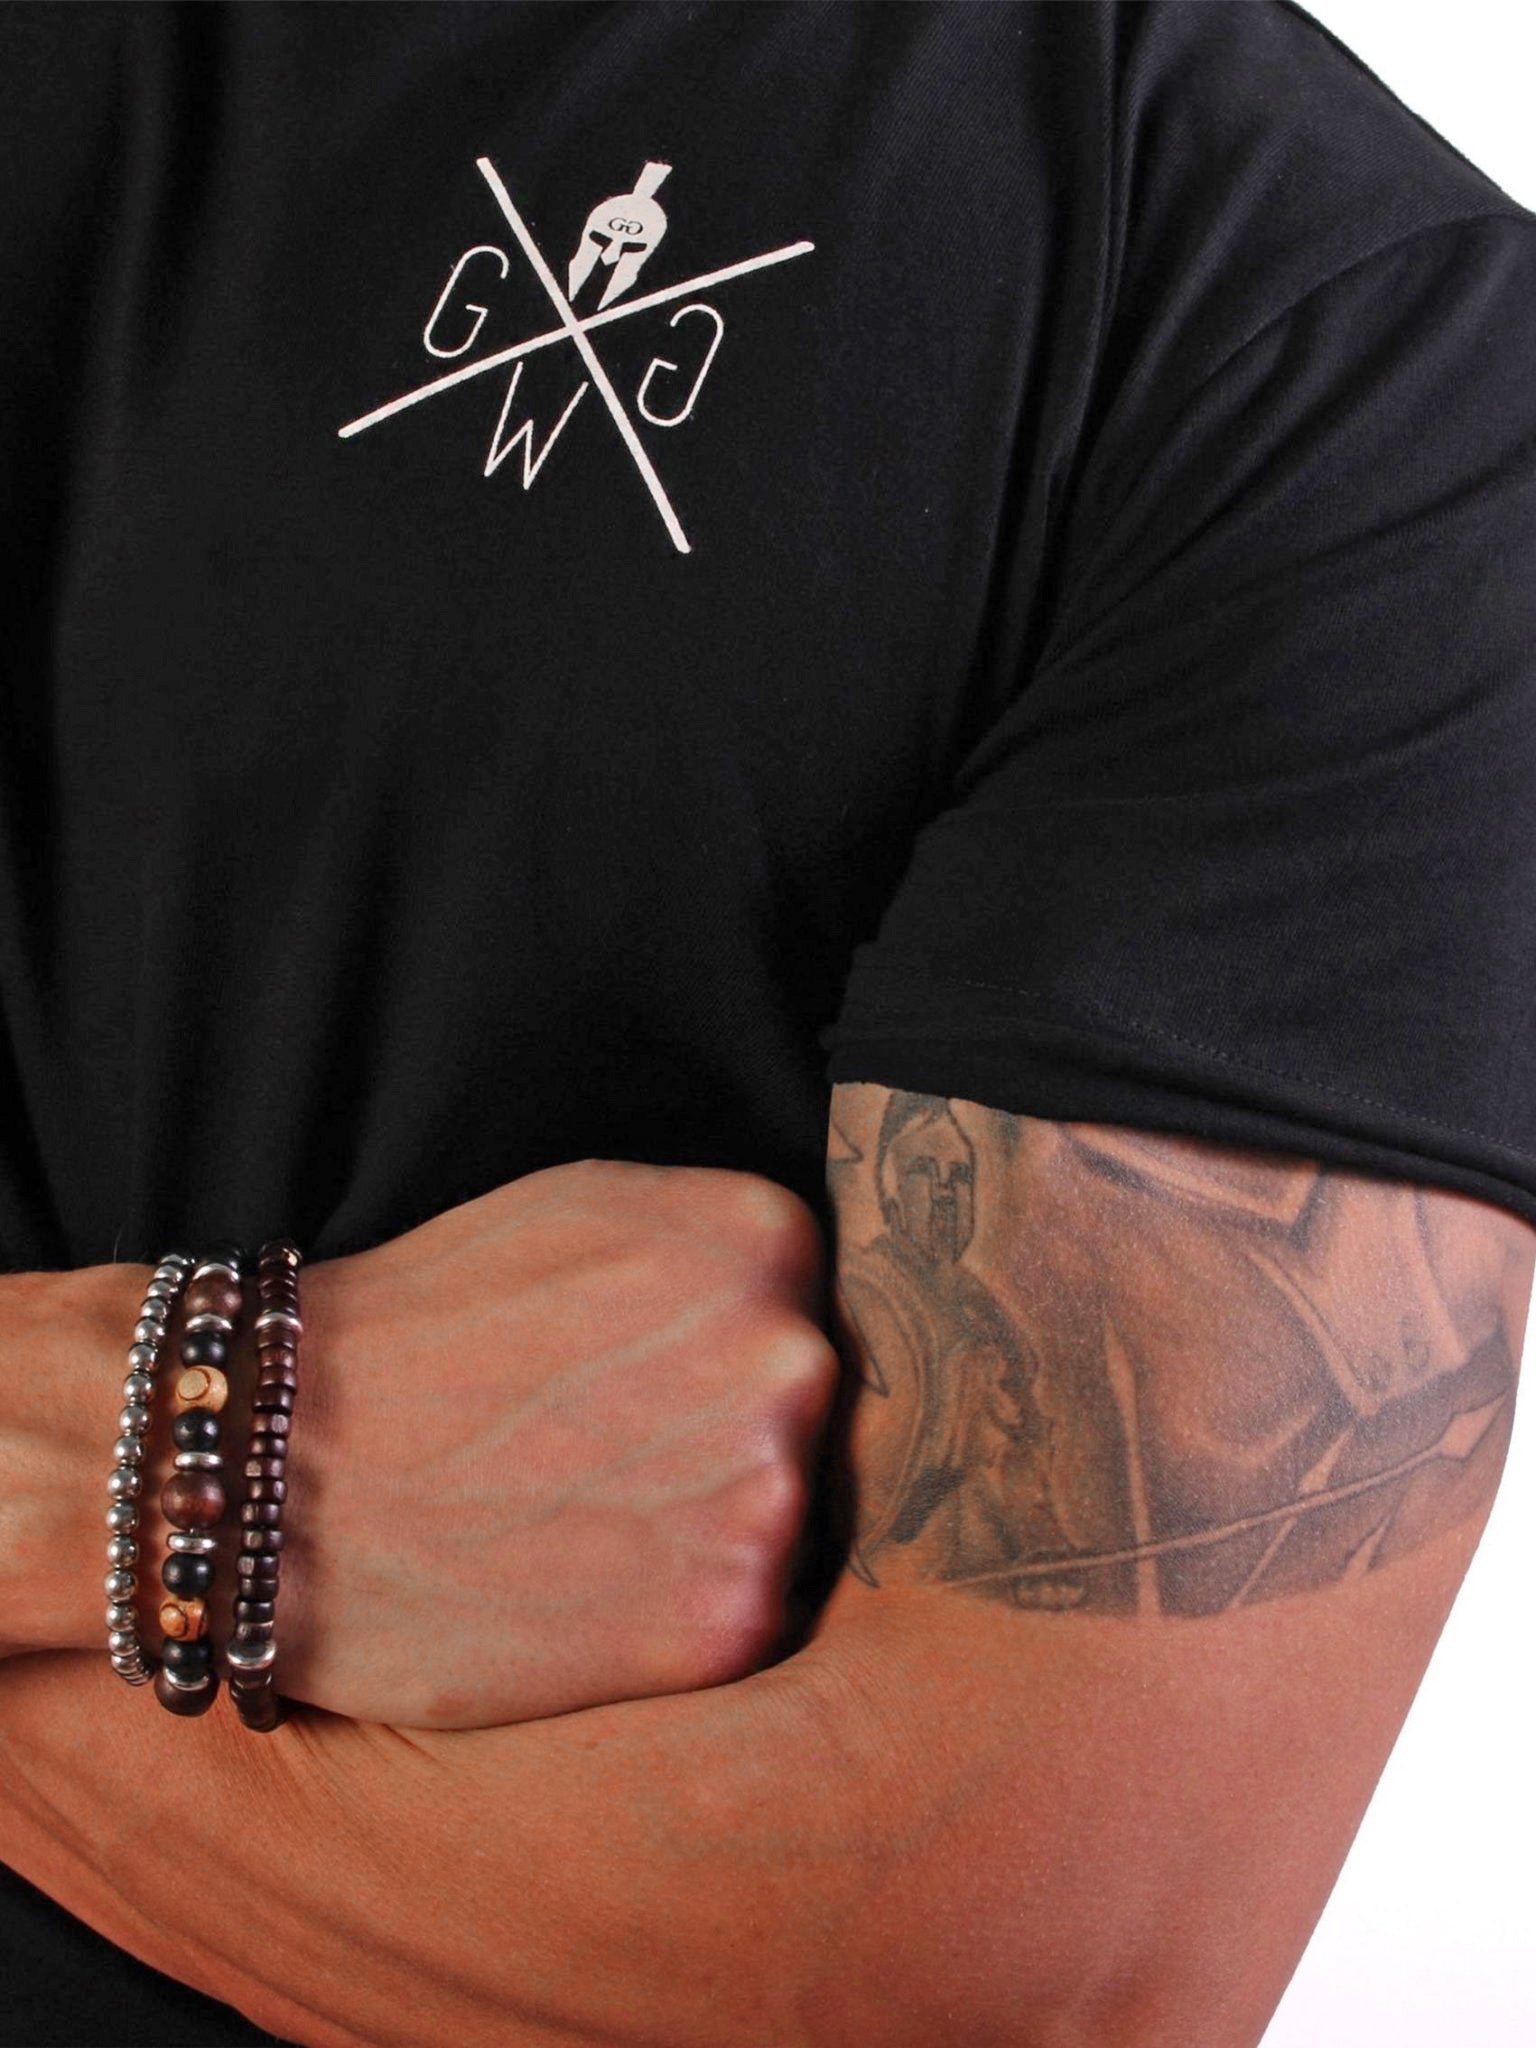 Hochwertiges schwarzes Gym T-Shirt aus 100% Baumwolle, bietet hervorragenden Tragekomfort und Atmungsaktivität.